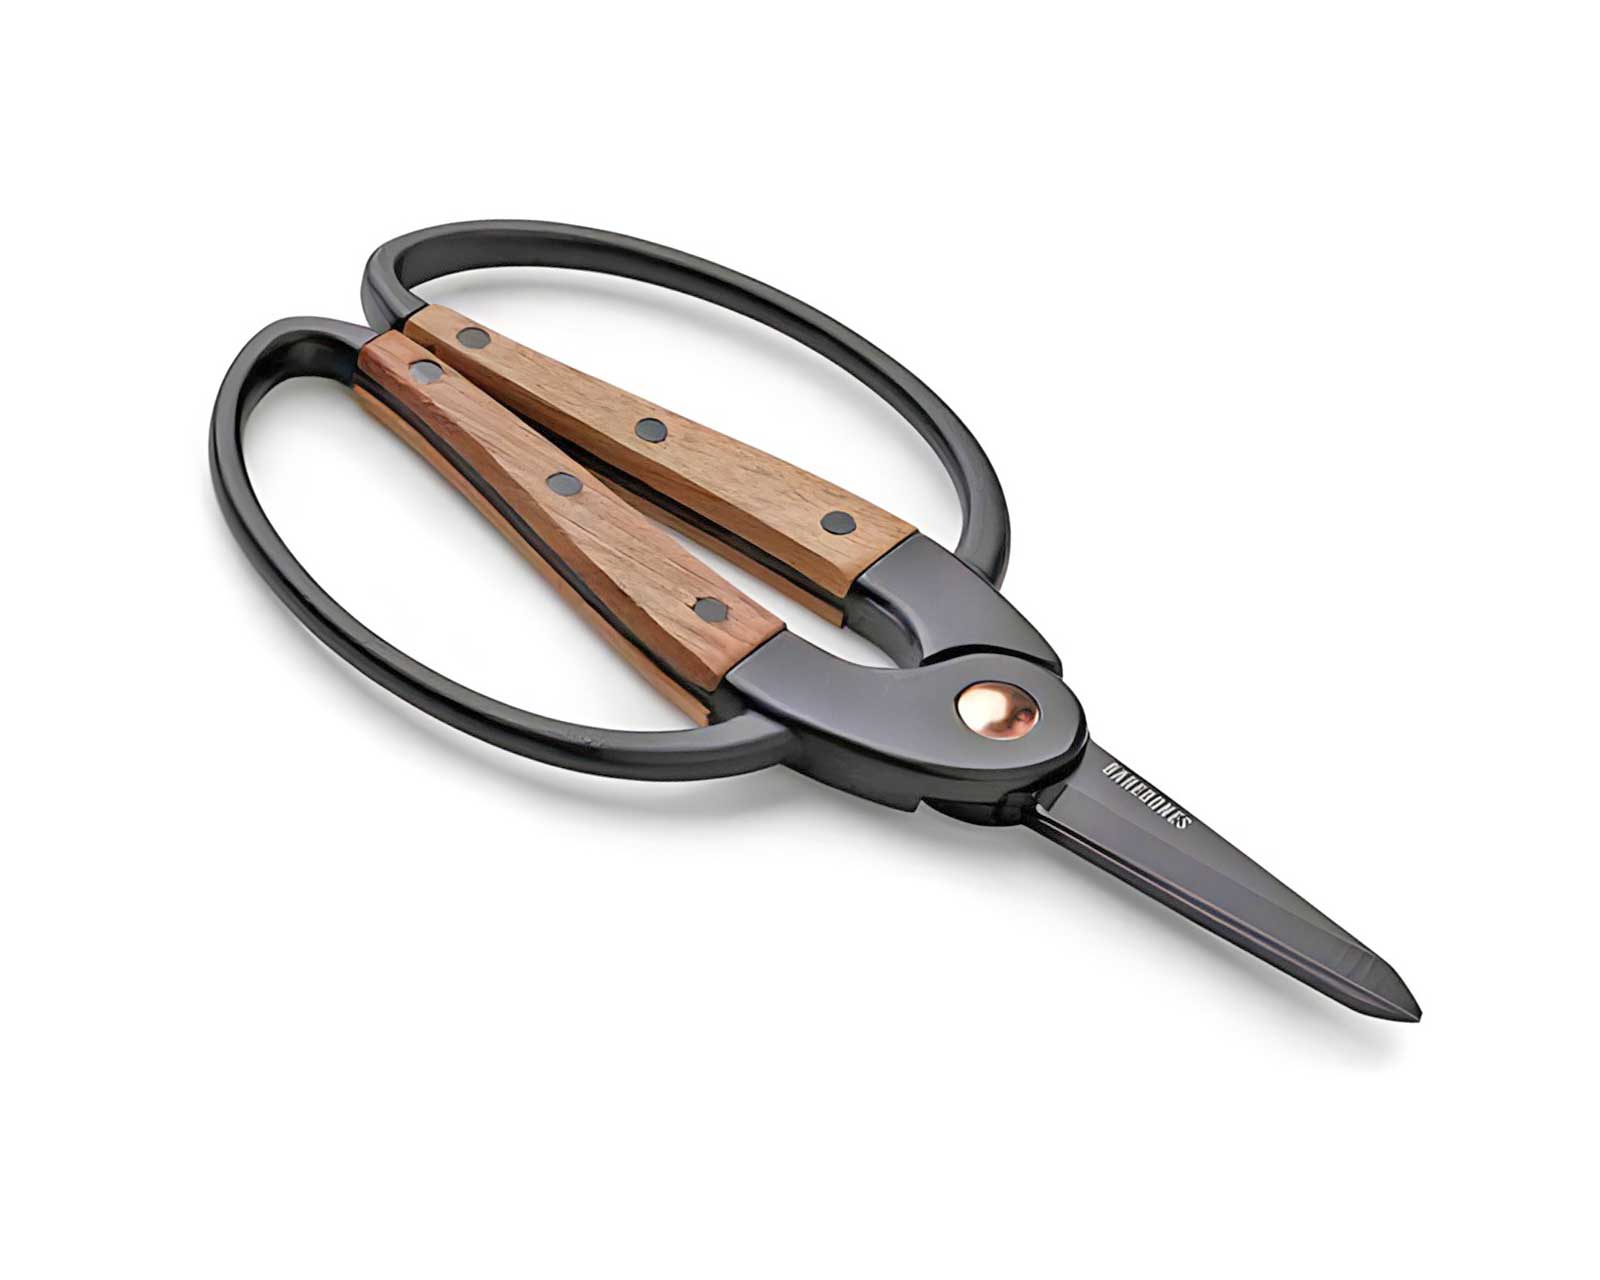 Gardener's Scissors/Shears - Small - Barebones